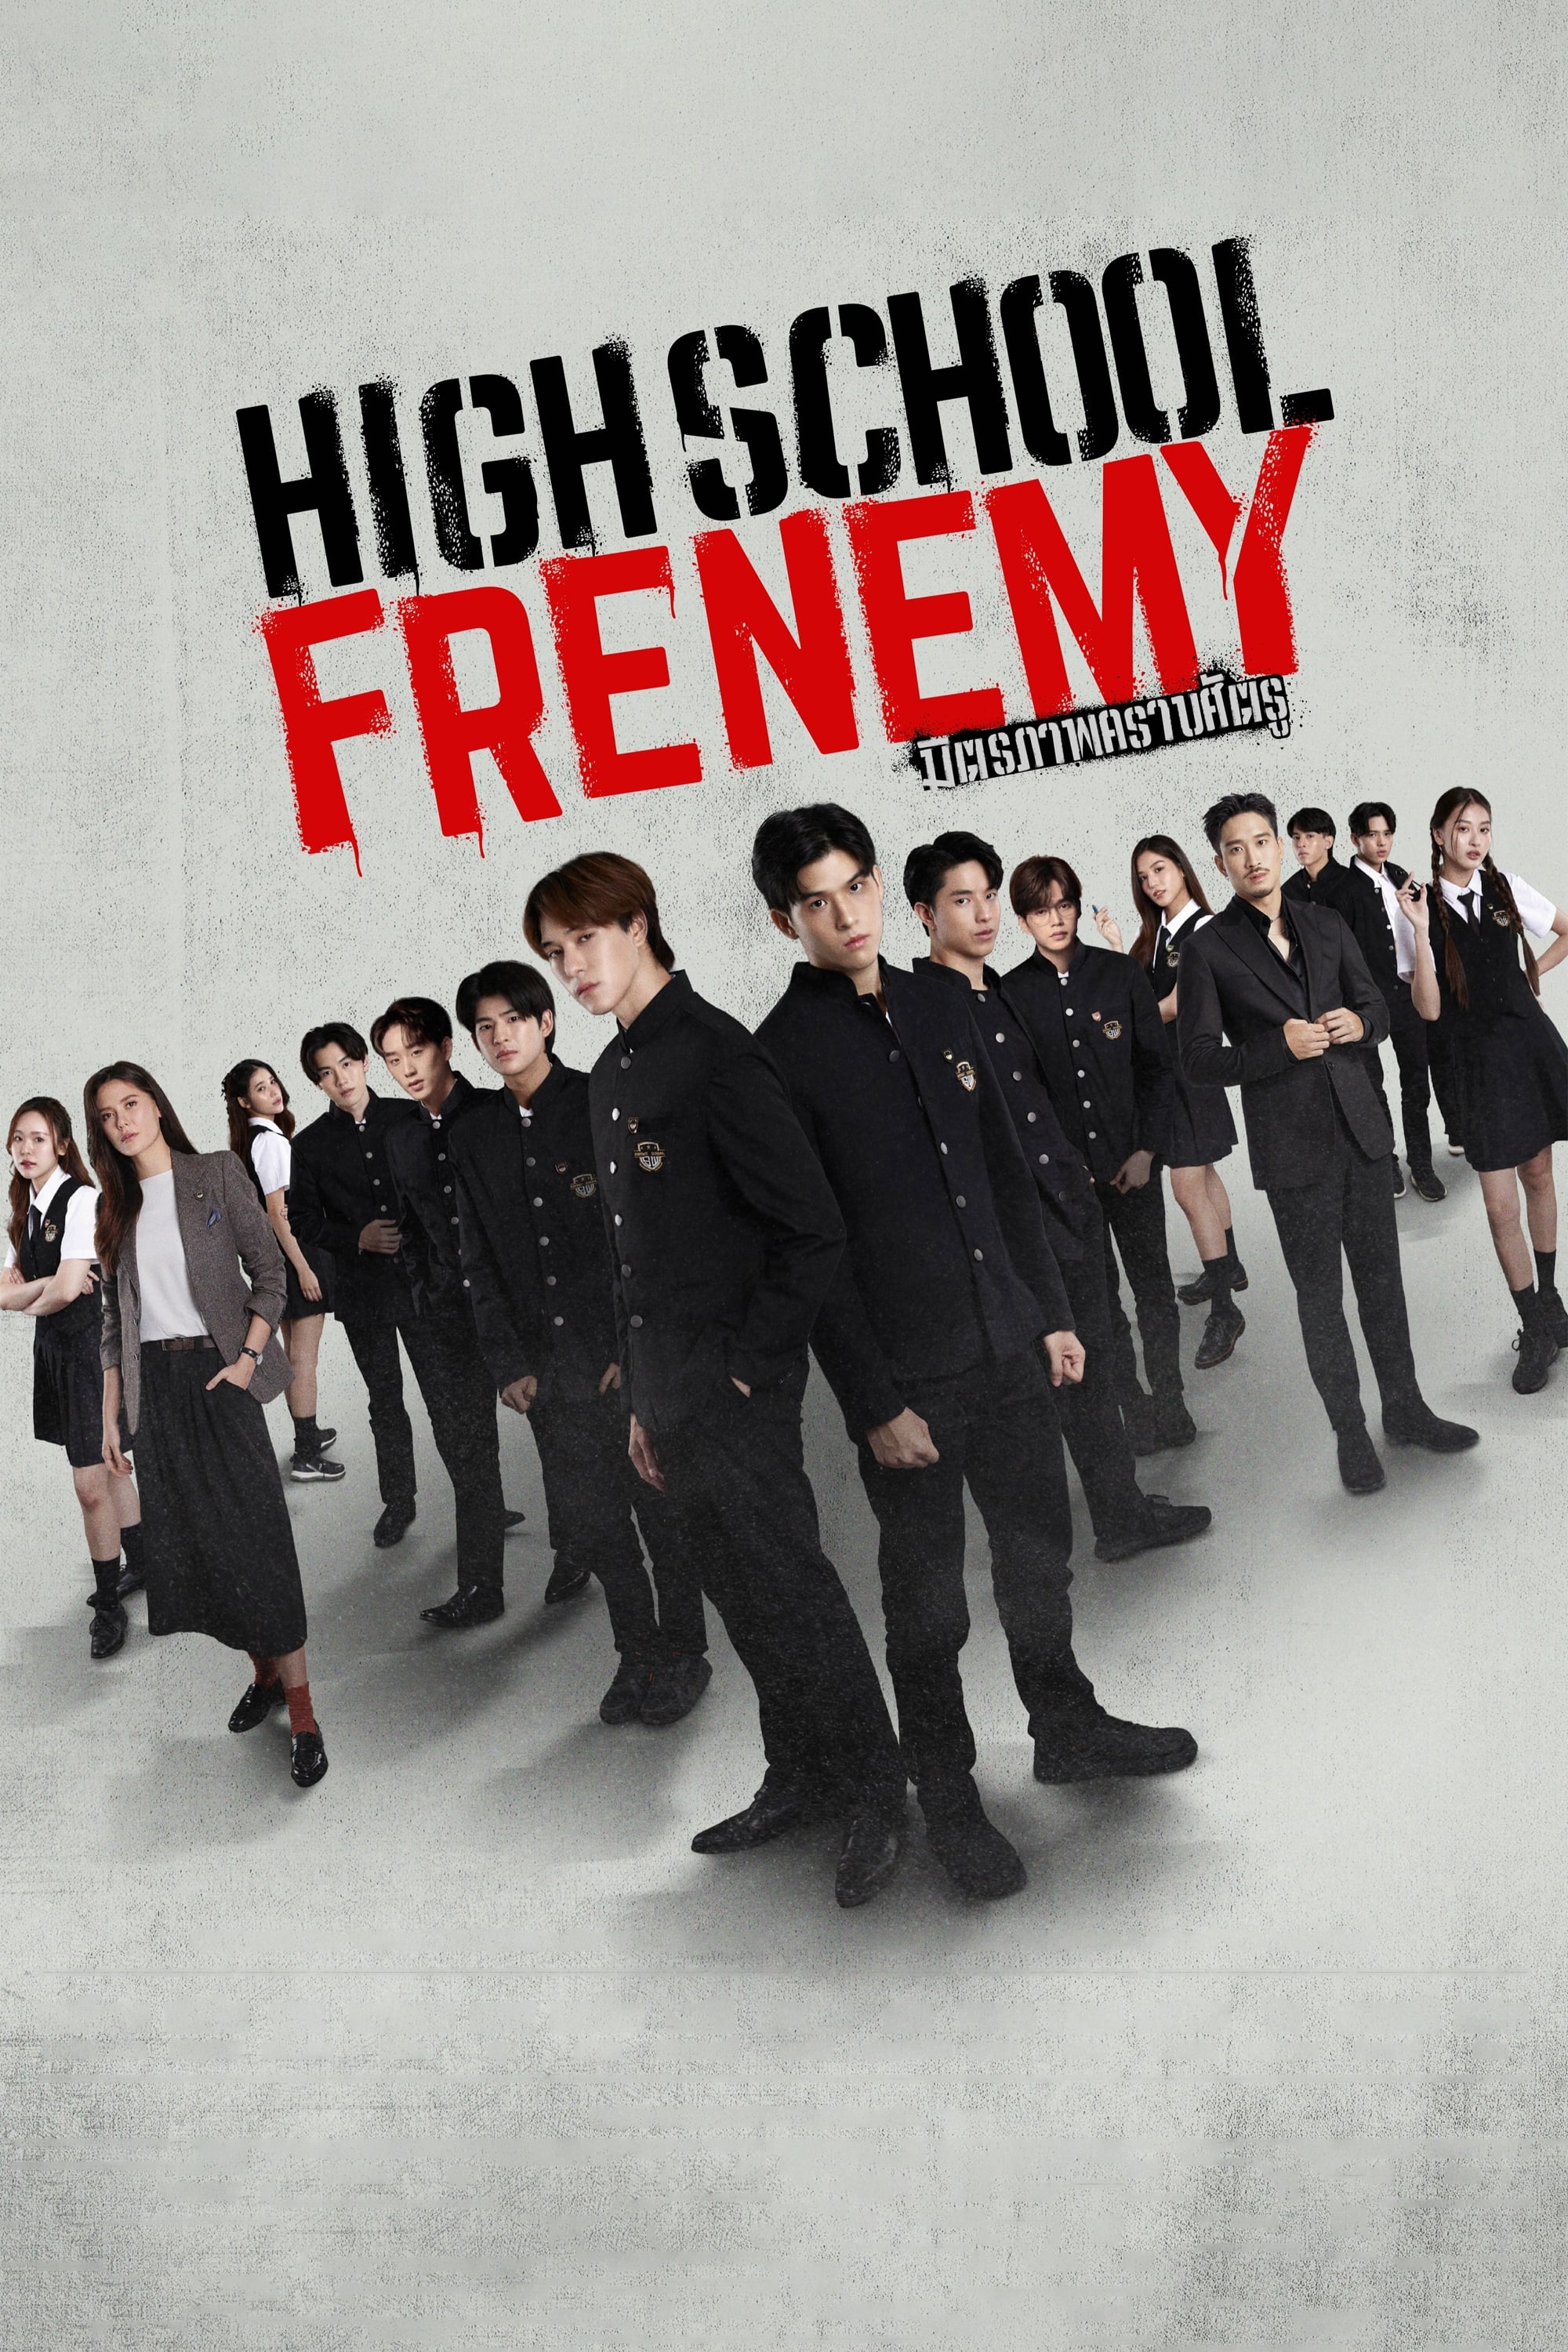 High School Frenemy